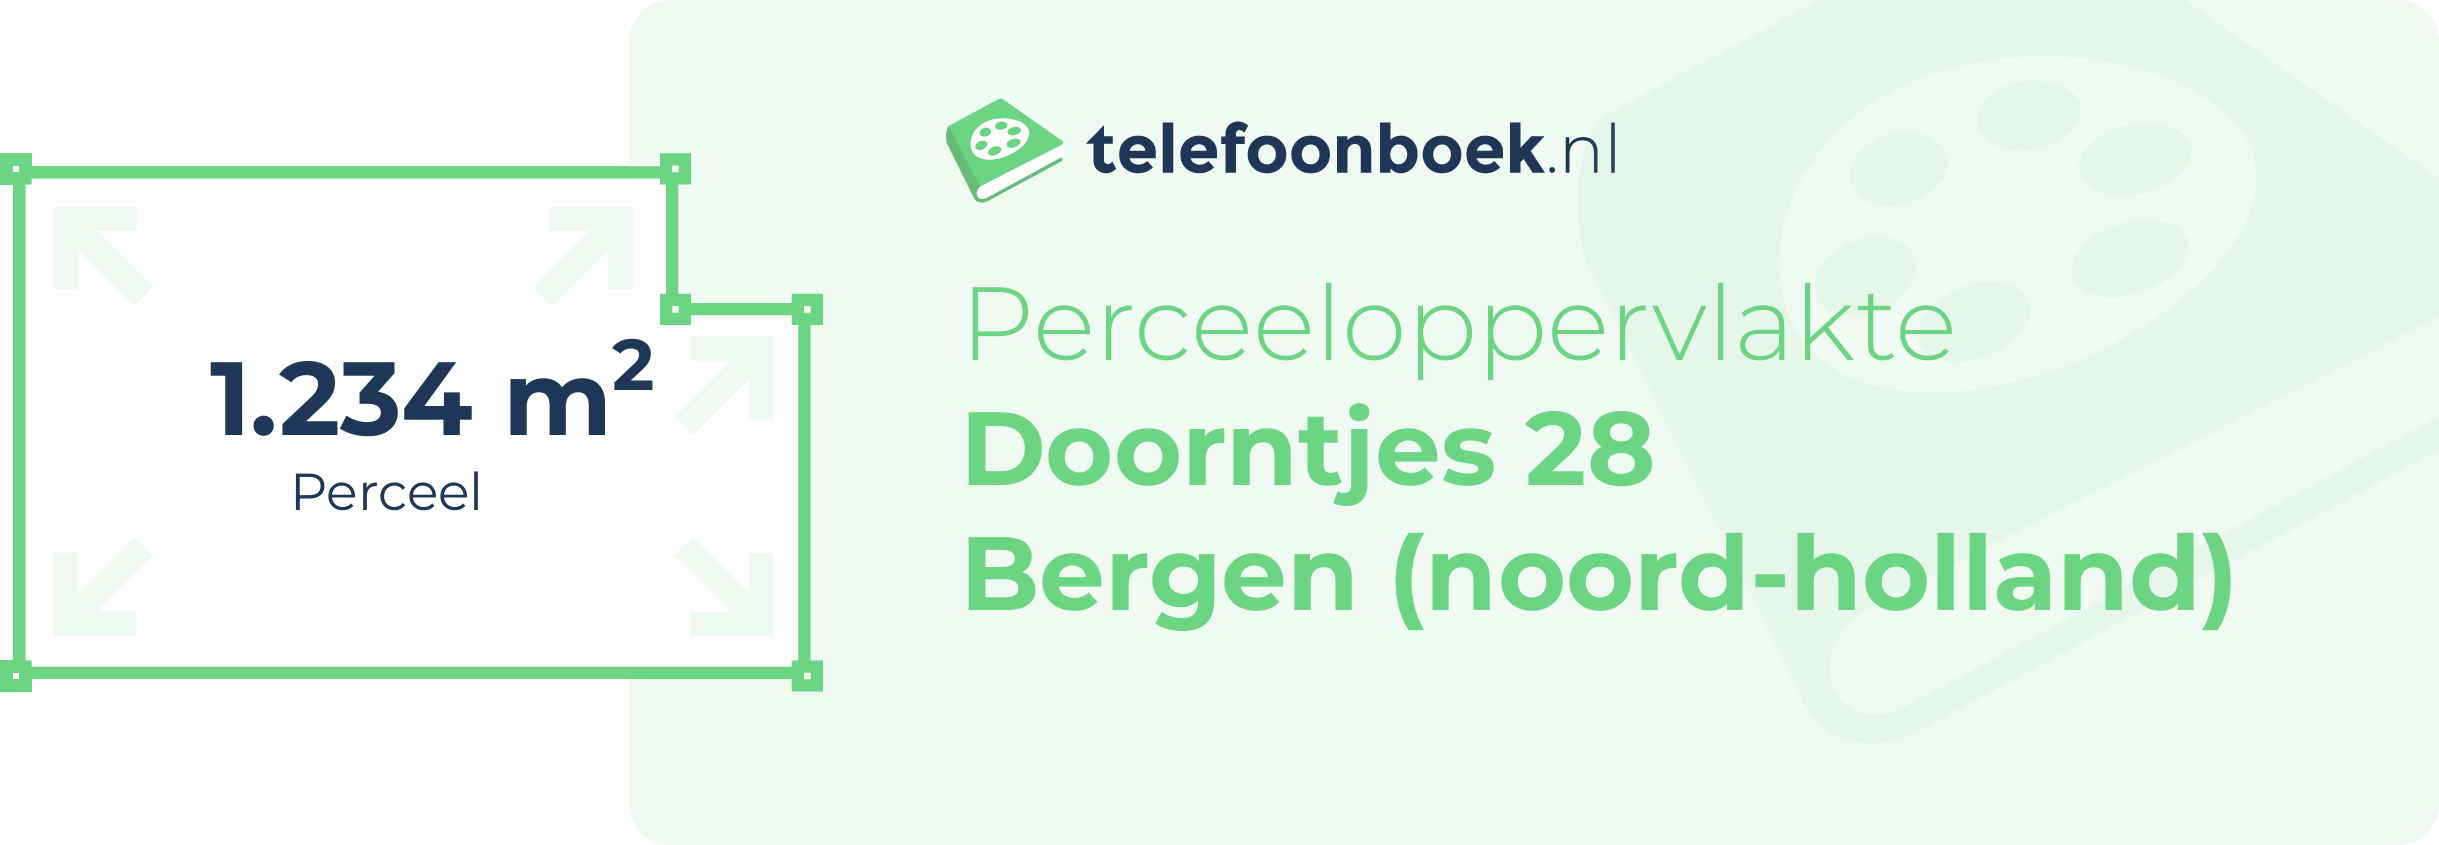 Perceeloppervlakte Doorntjes 28 Bergen (Noord-Holland)